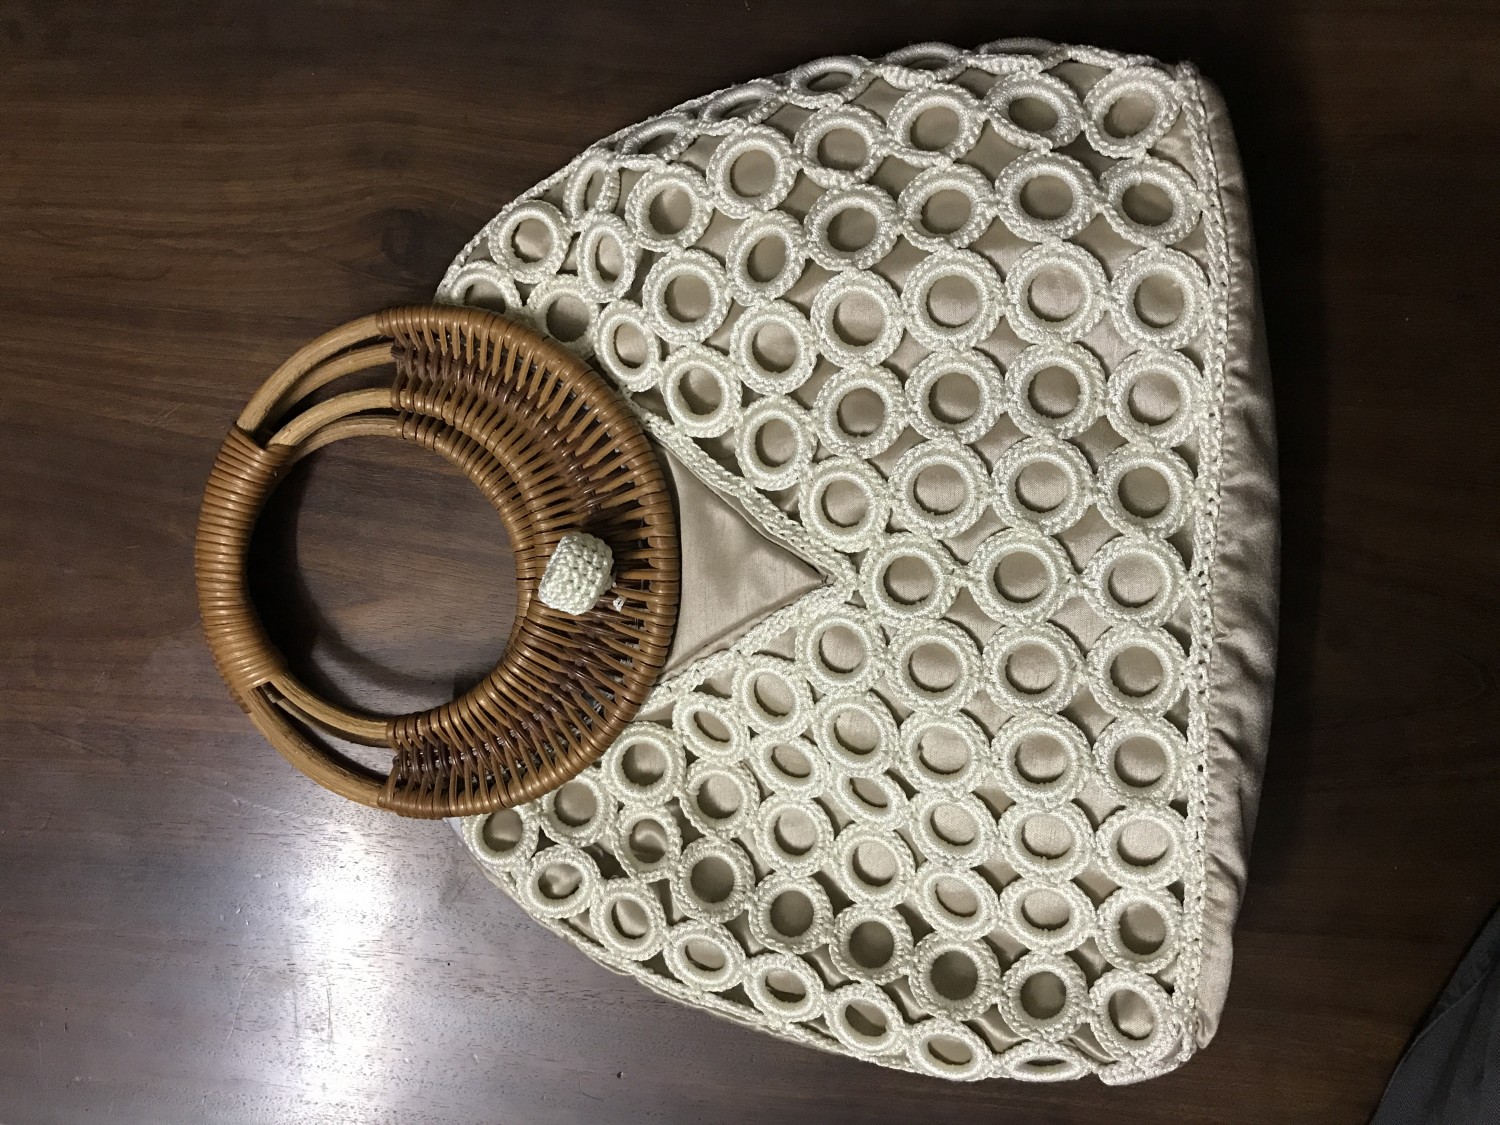 Vietnam Knitted/Crochet Handbag Manufacturer: A Comprehensive Guide